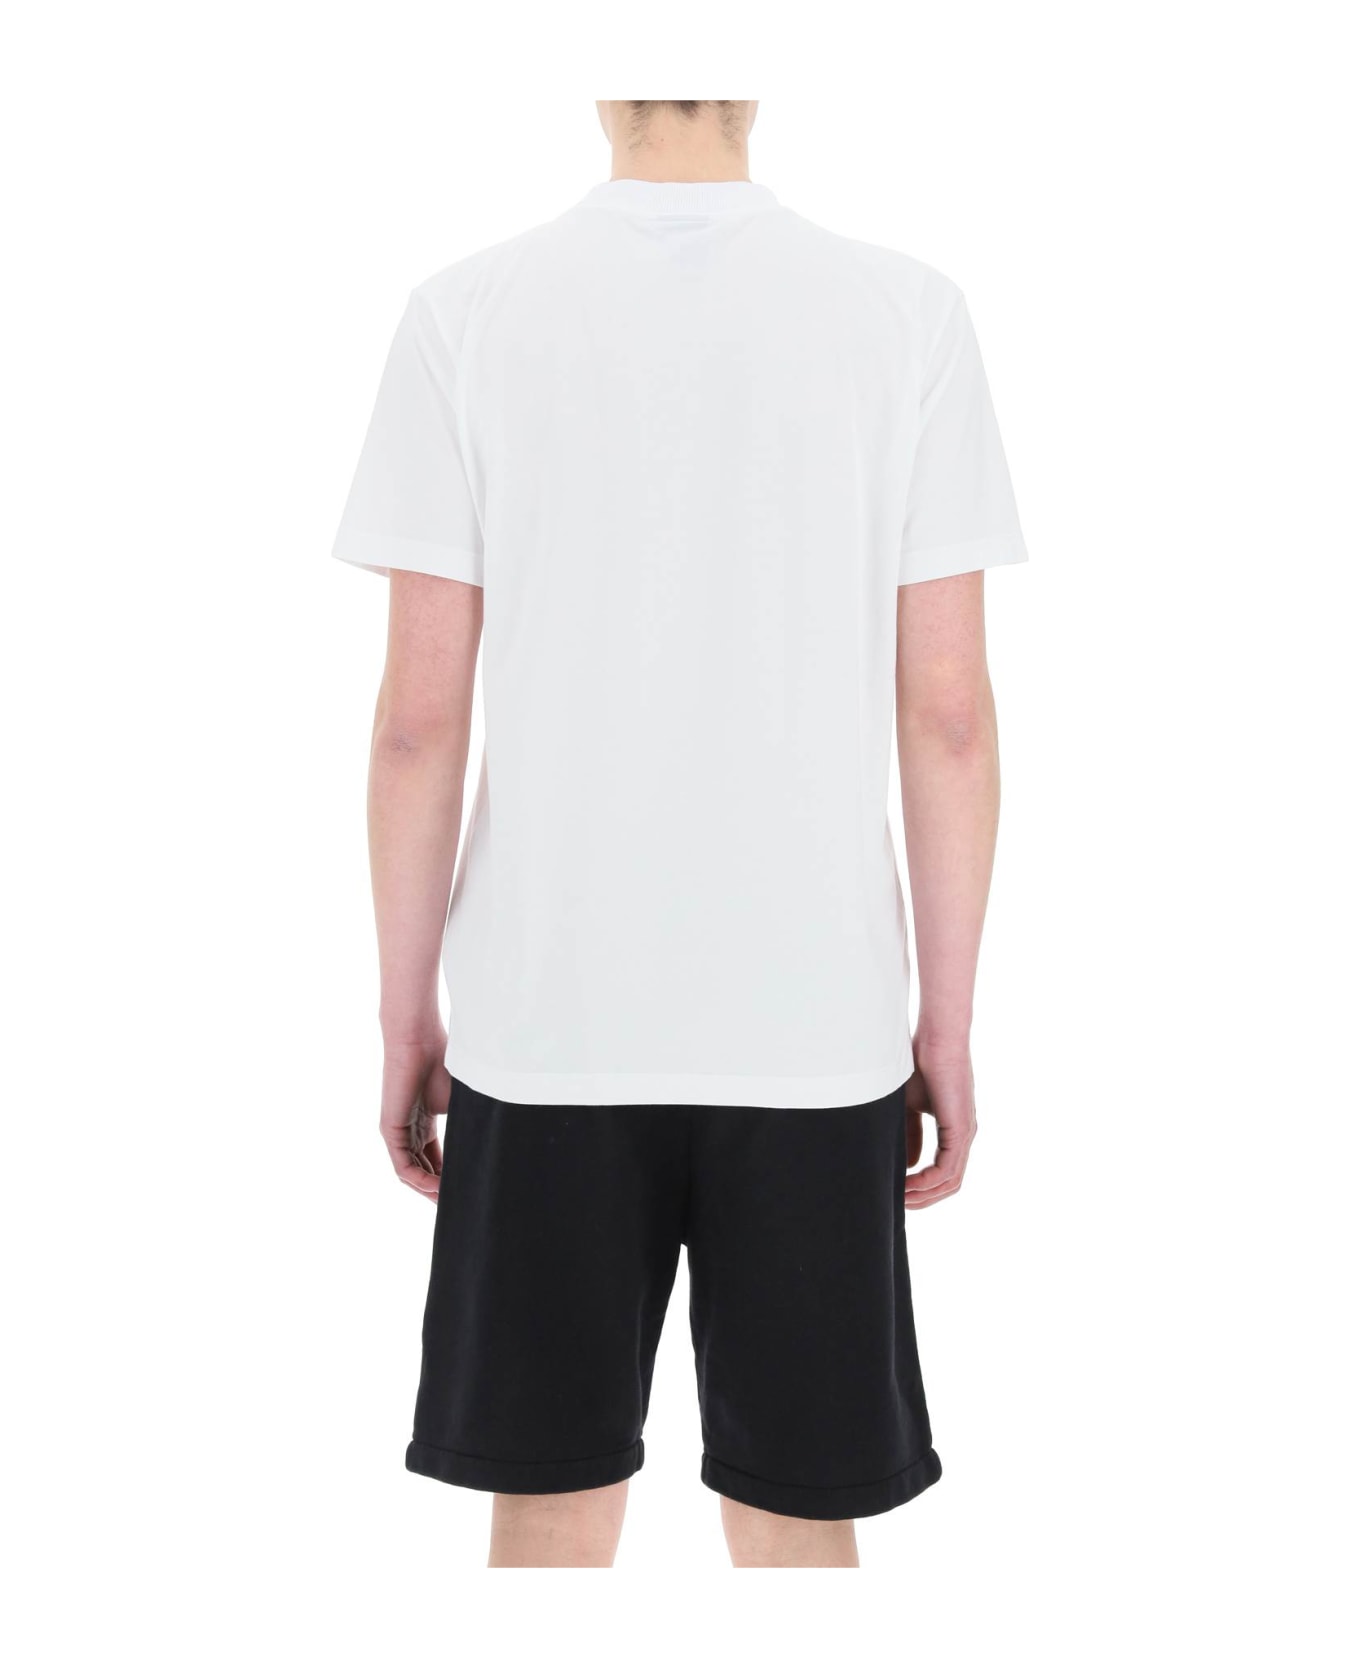 Marcelo Burlon Cross T-shirt - White